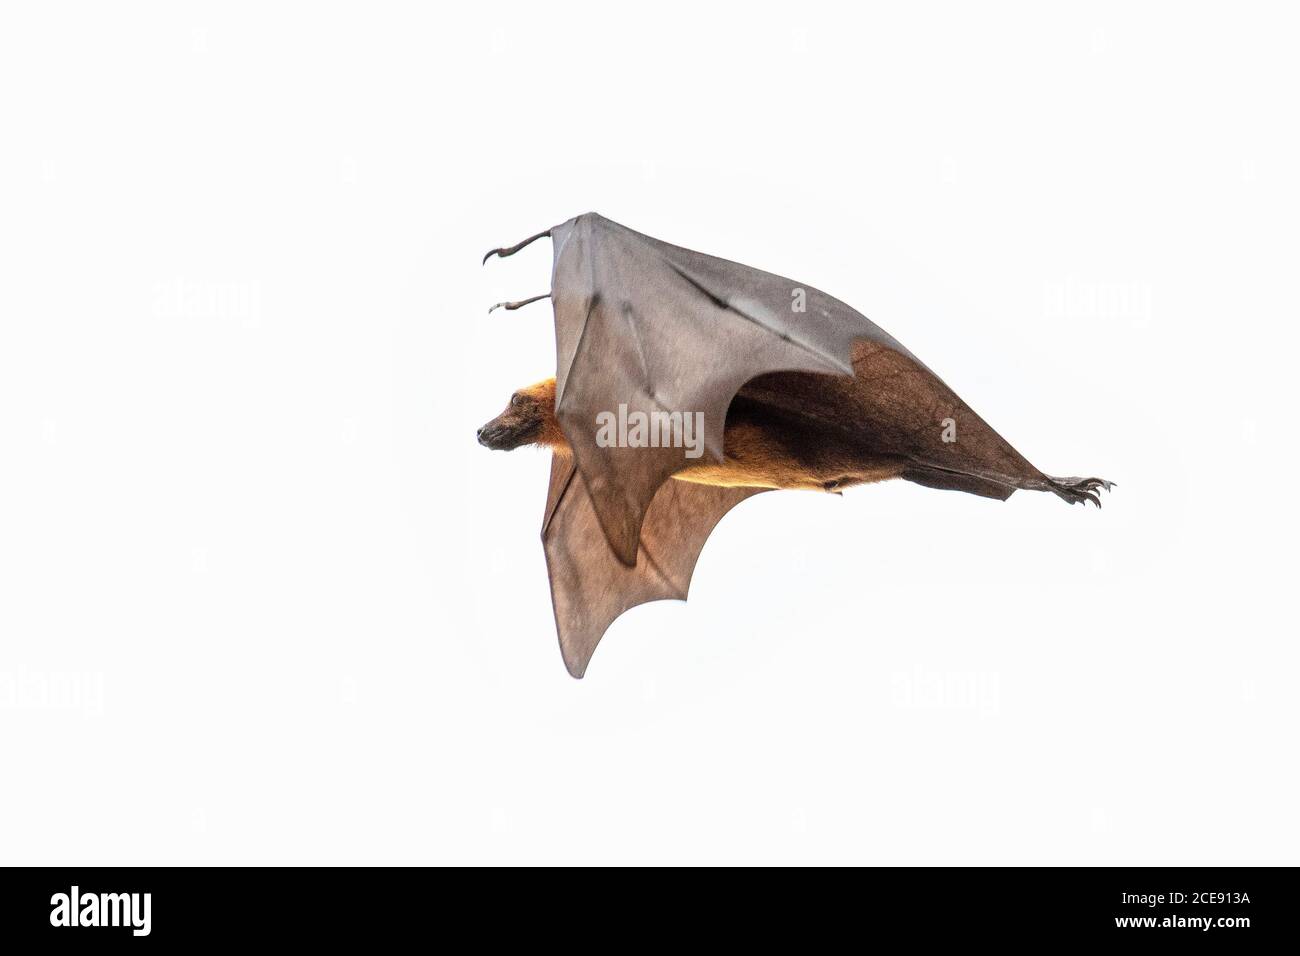 Sri Lanka, Waduwa, Life Ayurveda Resort. Le renard volant indien (Pteropus medius, anciennement Pteropus giganteus), également connu sous le nom de Bat de fruits indiens. Banque D'Images